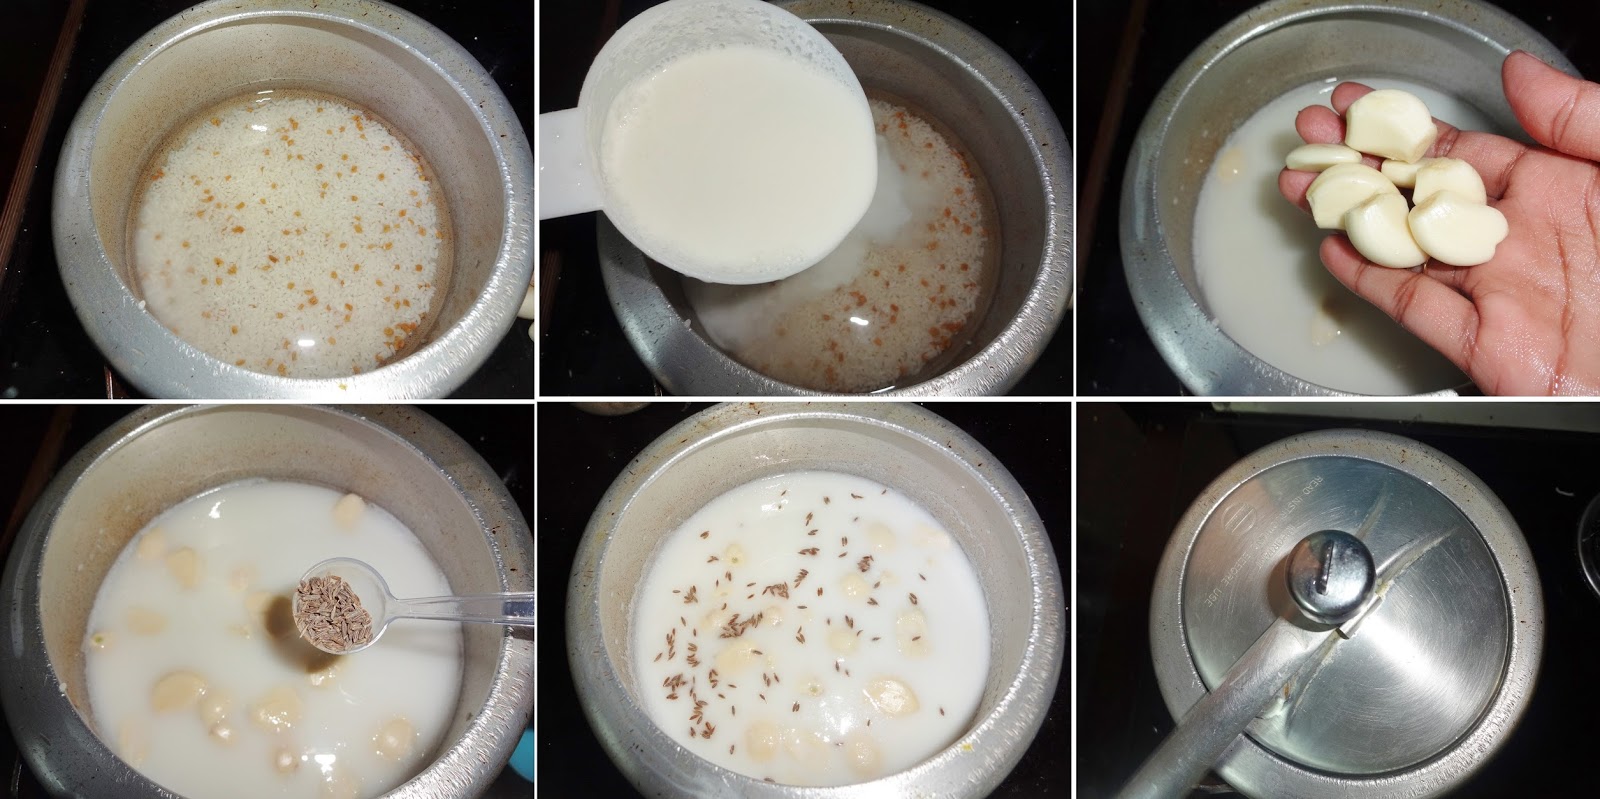 فوائد الحليب مع الثوم و وصفاته الصحيه  فوائد-وصفات-الحليب-مع-الثوم-مع-الوصفات7